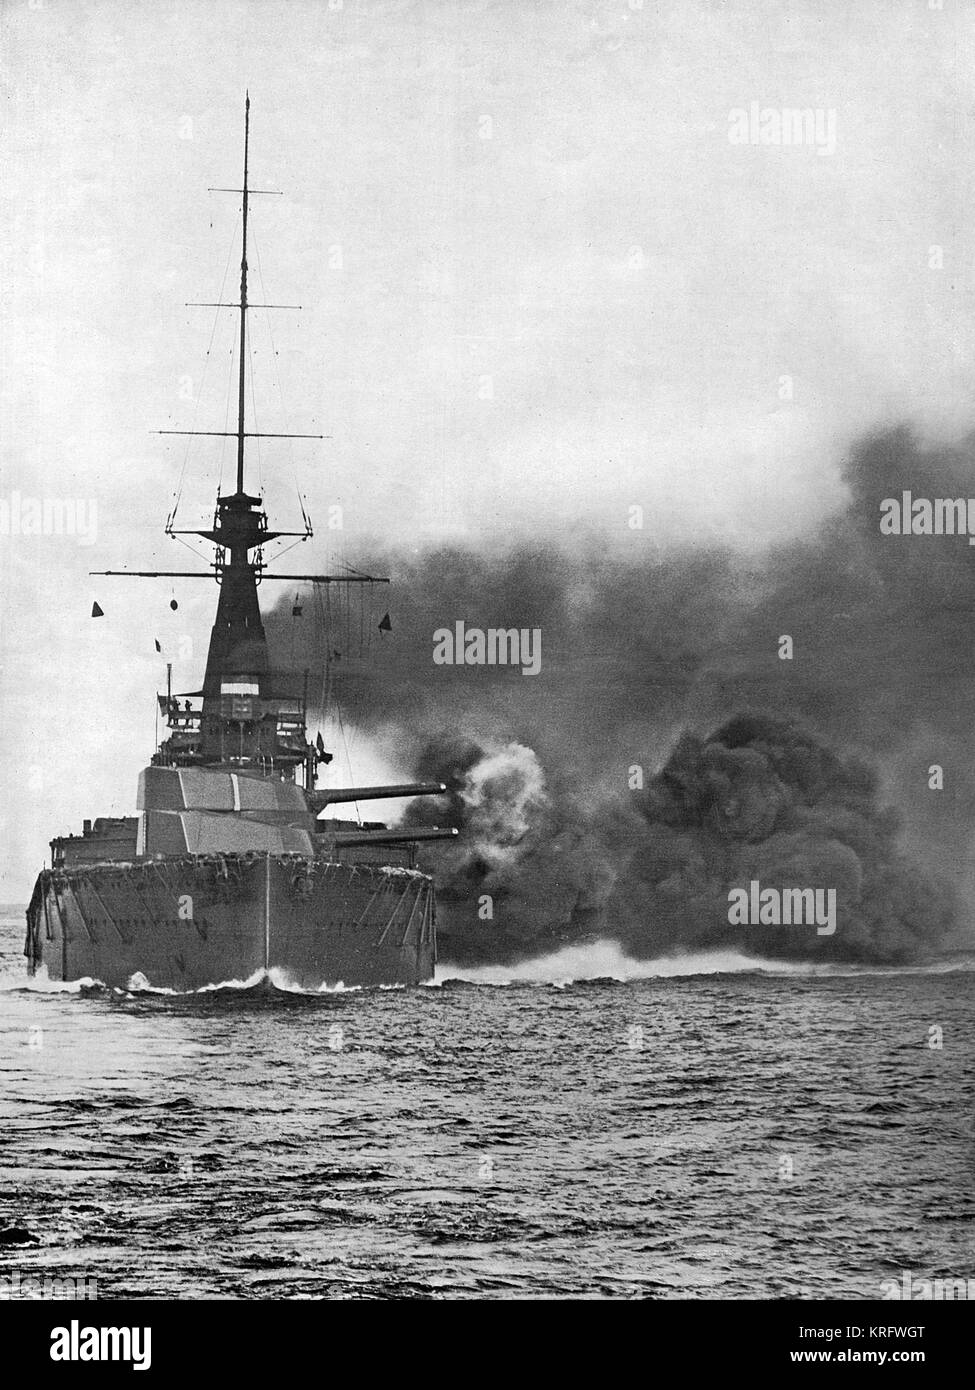 Die Orion-Klasse britische Schlachtschiff, H.M.S. 'Monarch', feuern ihre breitseiten von 13,5 cm Geschütze. Sie diente in der 2 Battle Squadron der Grand Fleet im Ersten Weltkrieg und in der Schlacht von Jütland, 31. Mai 1916 kämpfte, Leiden keine Schäden. Datum: 1914 Stockfoto